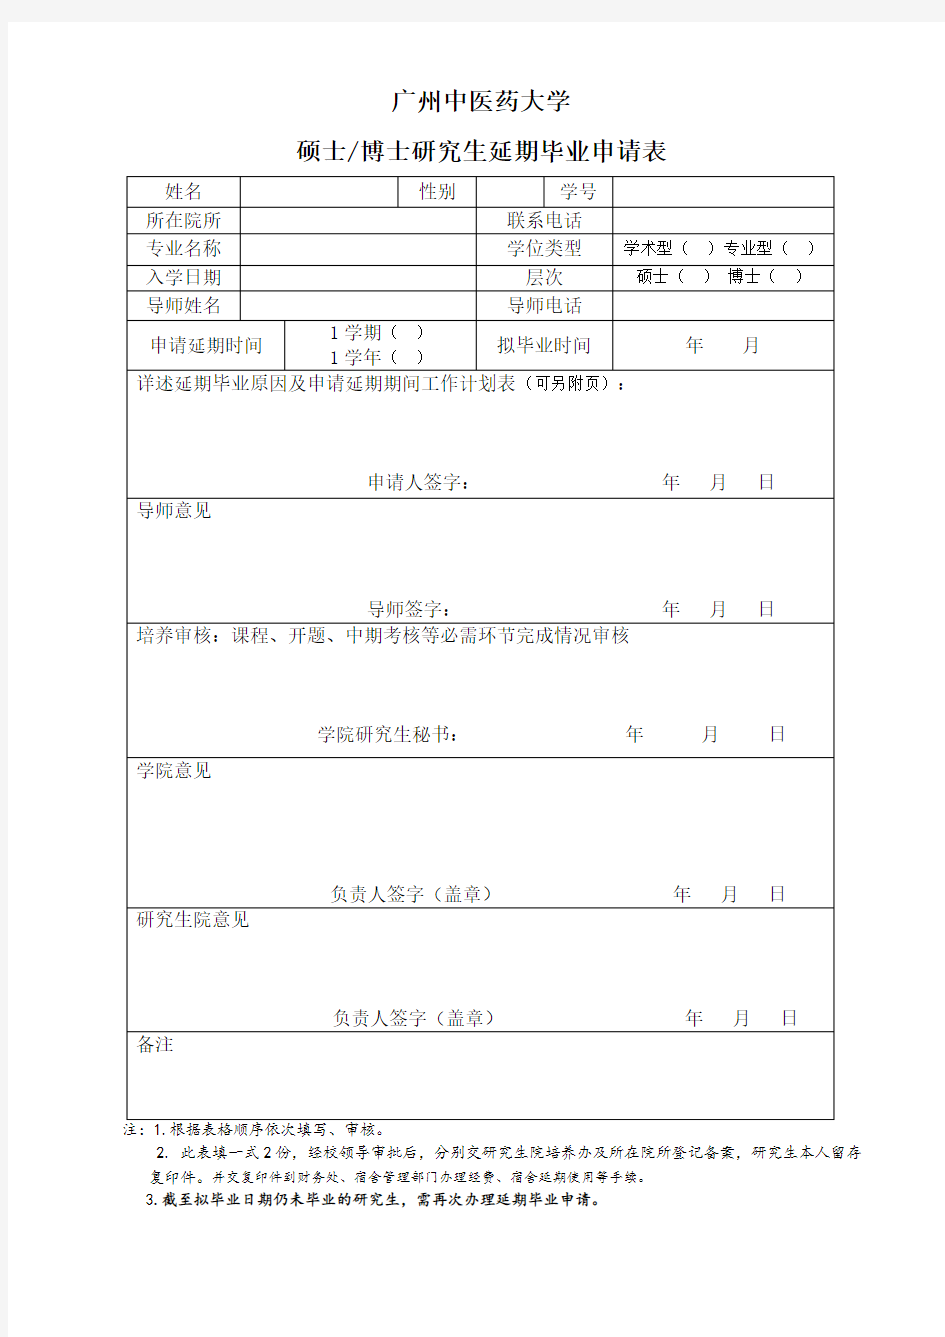 广州中医药大学研究生延期毕业申请表2020版